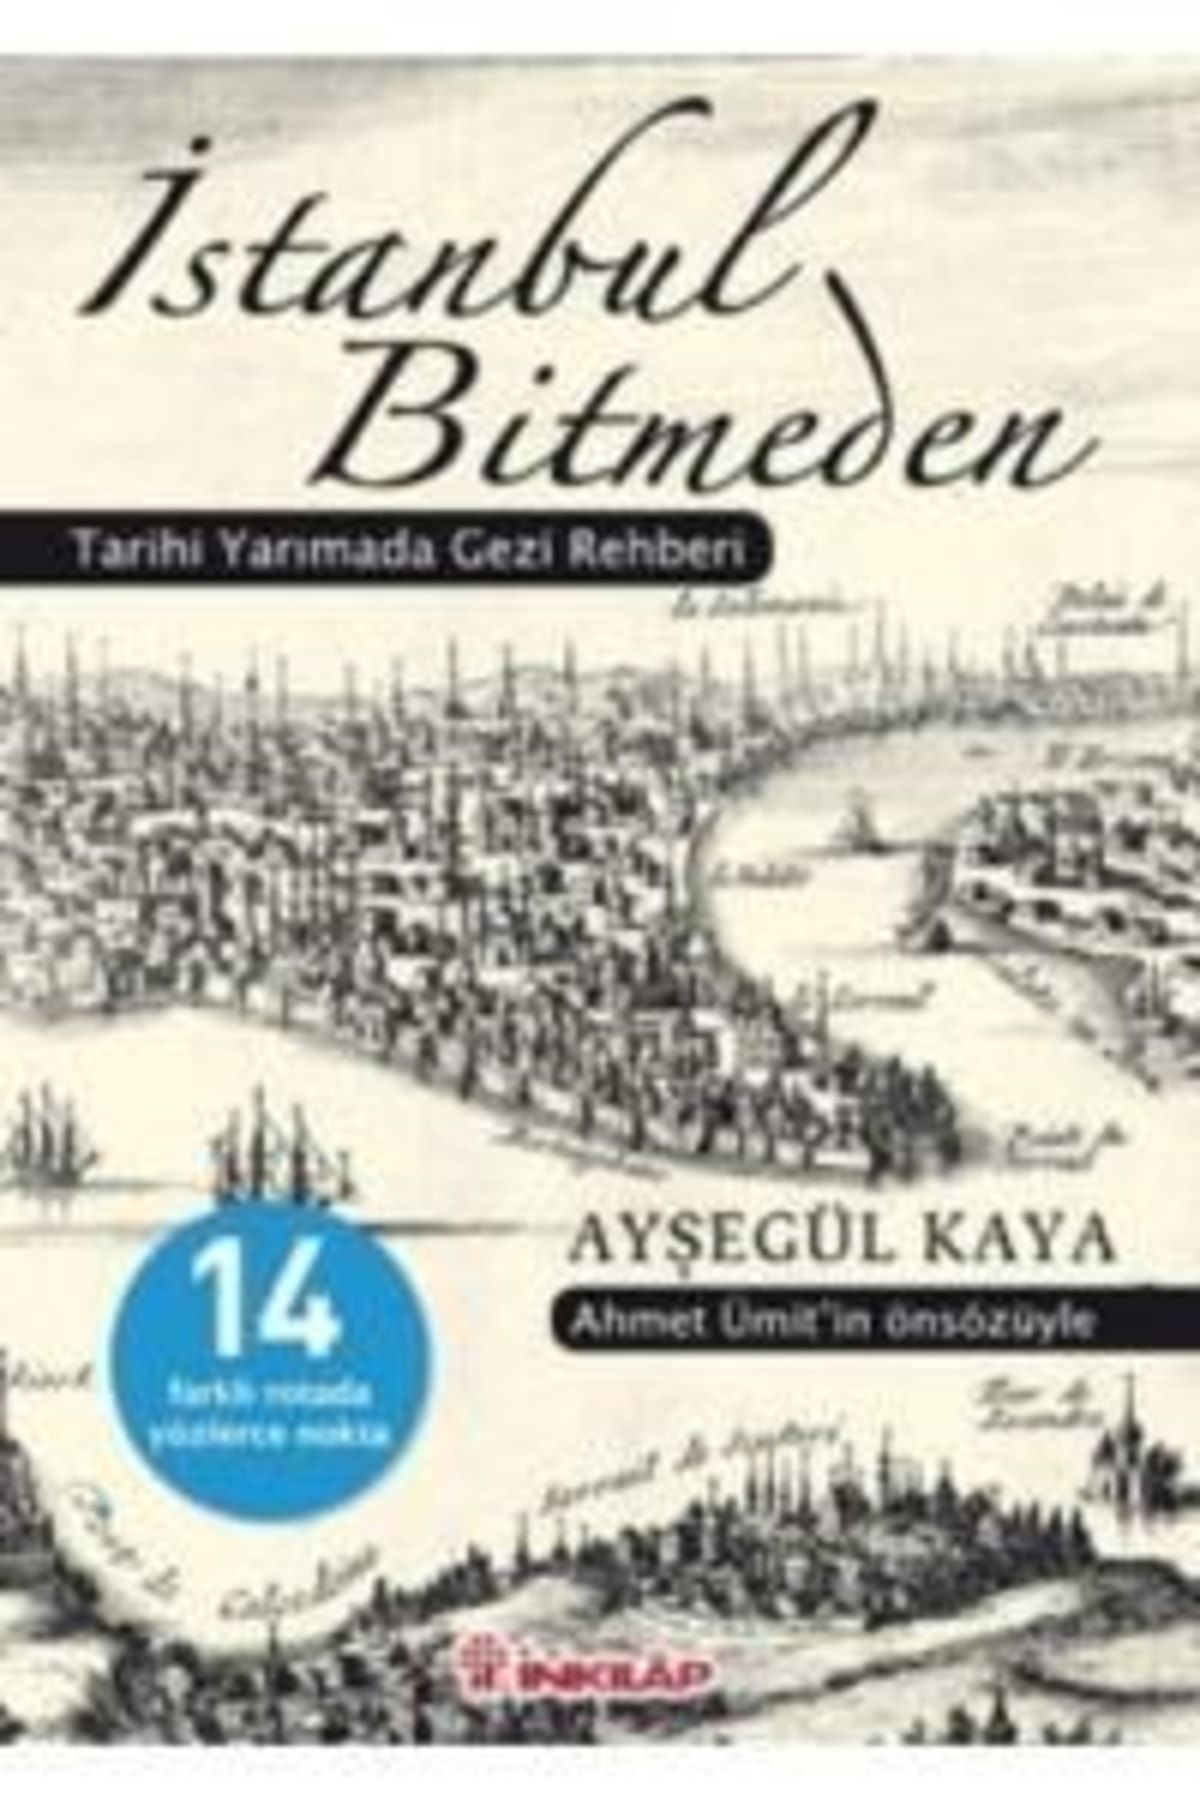 İnkılap Kitabevi Istanbul Bitmeden Tarihi Yarımada Gezi Rehberi